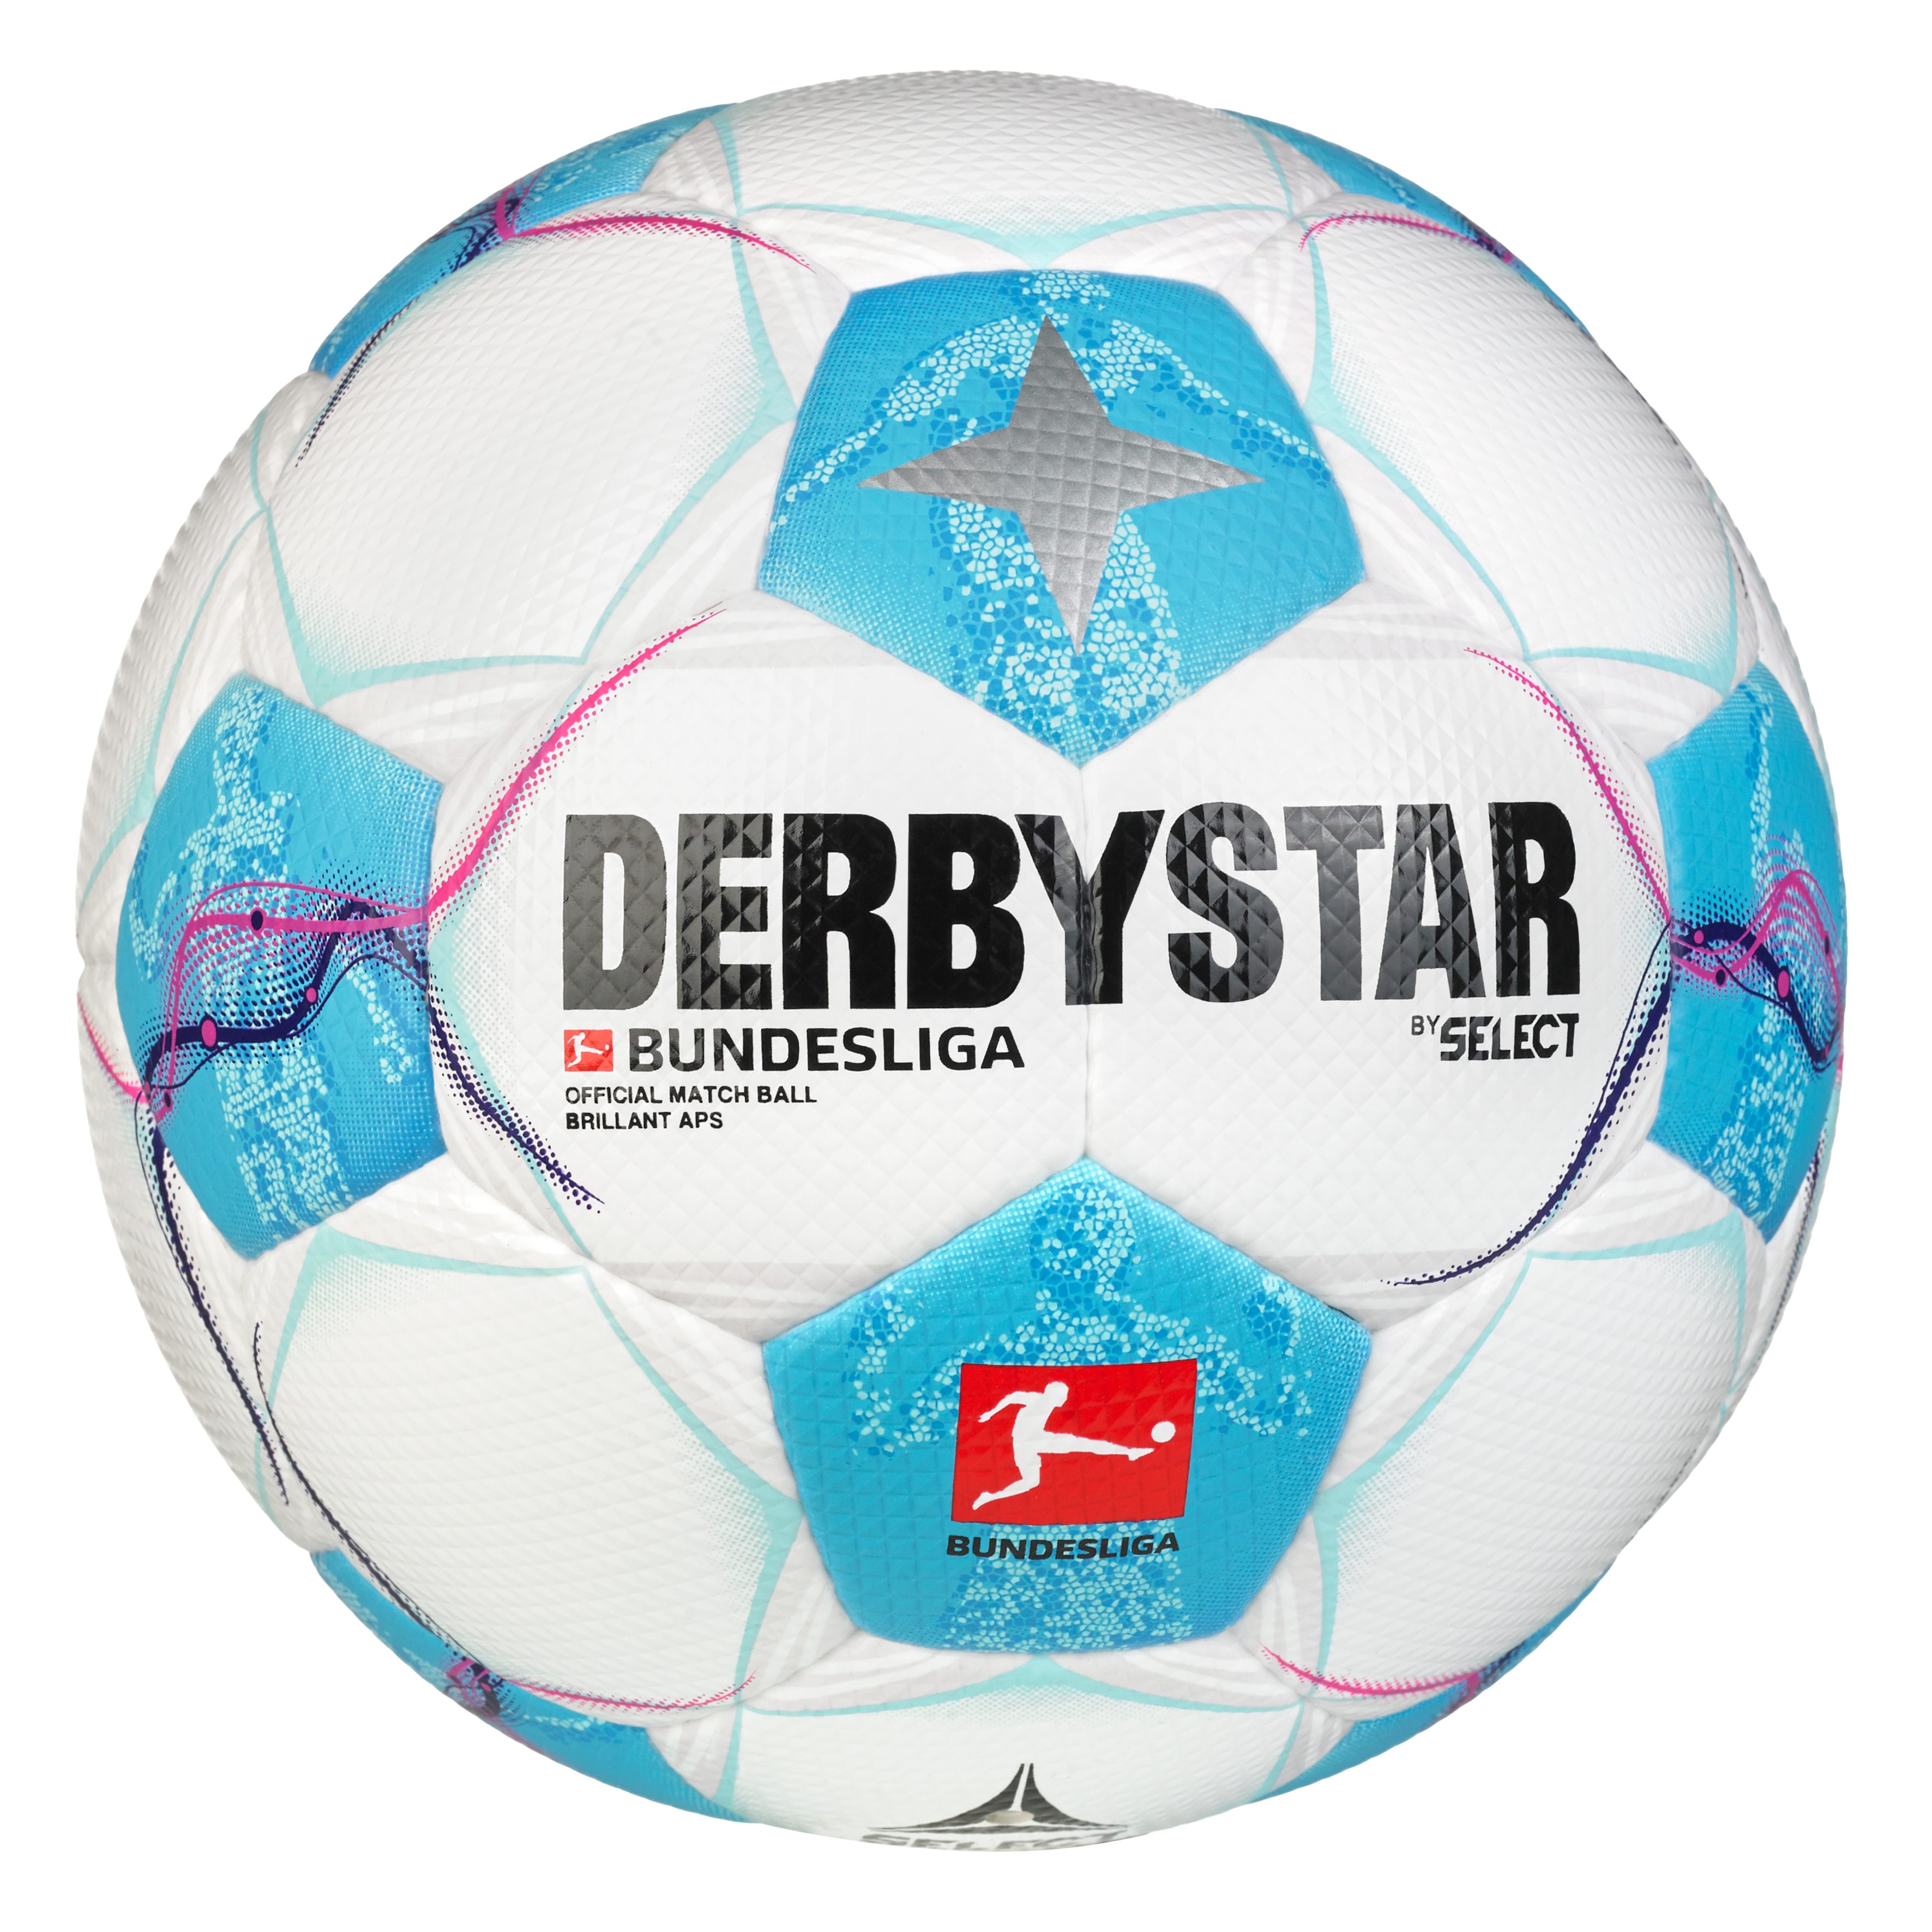 Derbystar Fußball Bundesliga Brillant APS V24 Offizieller Spielball